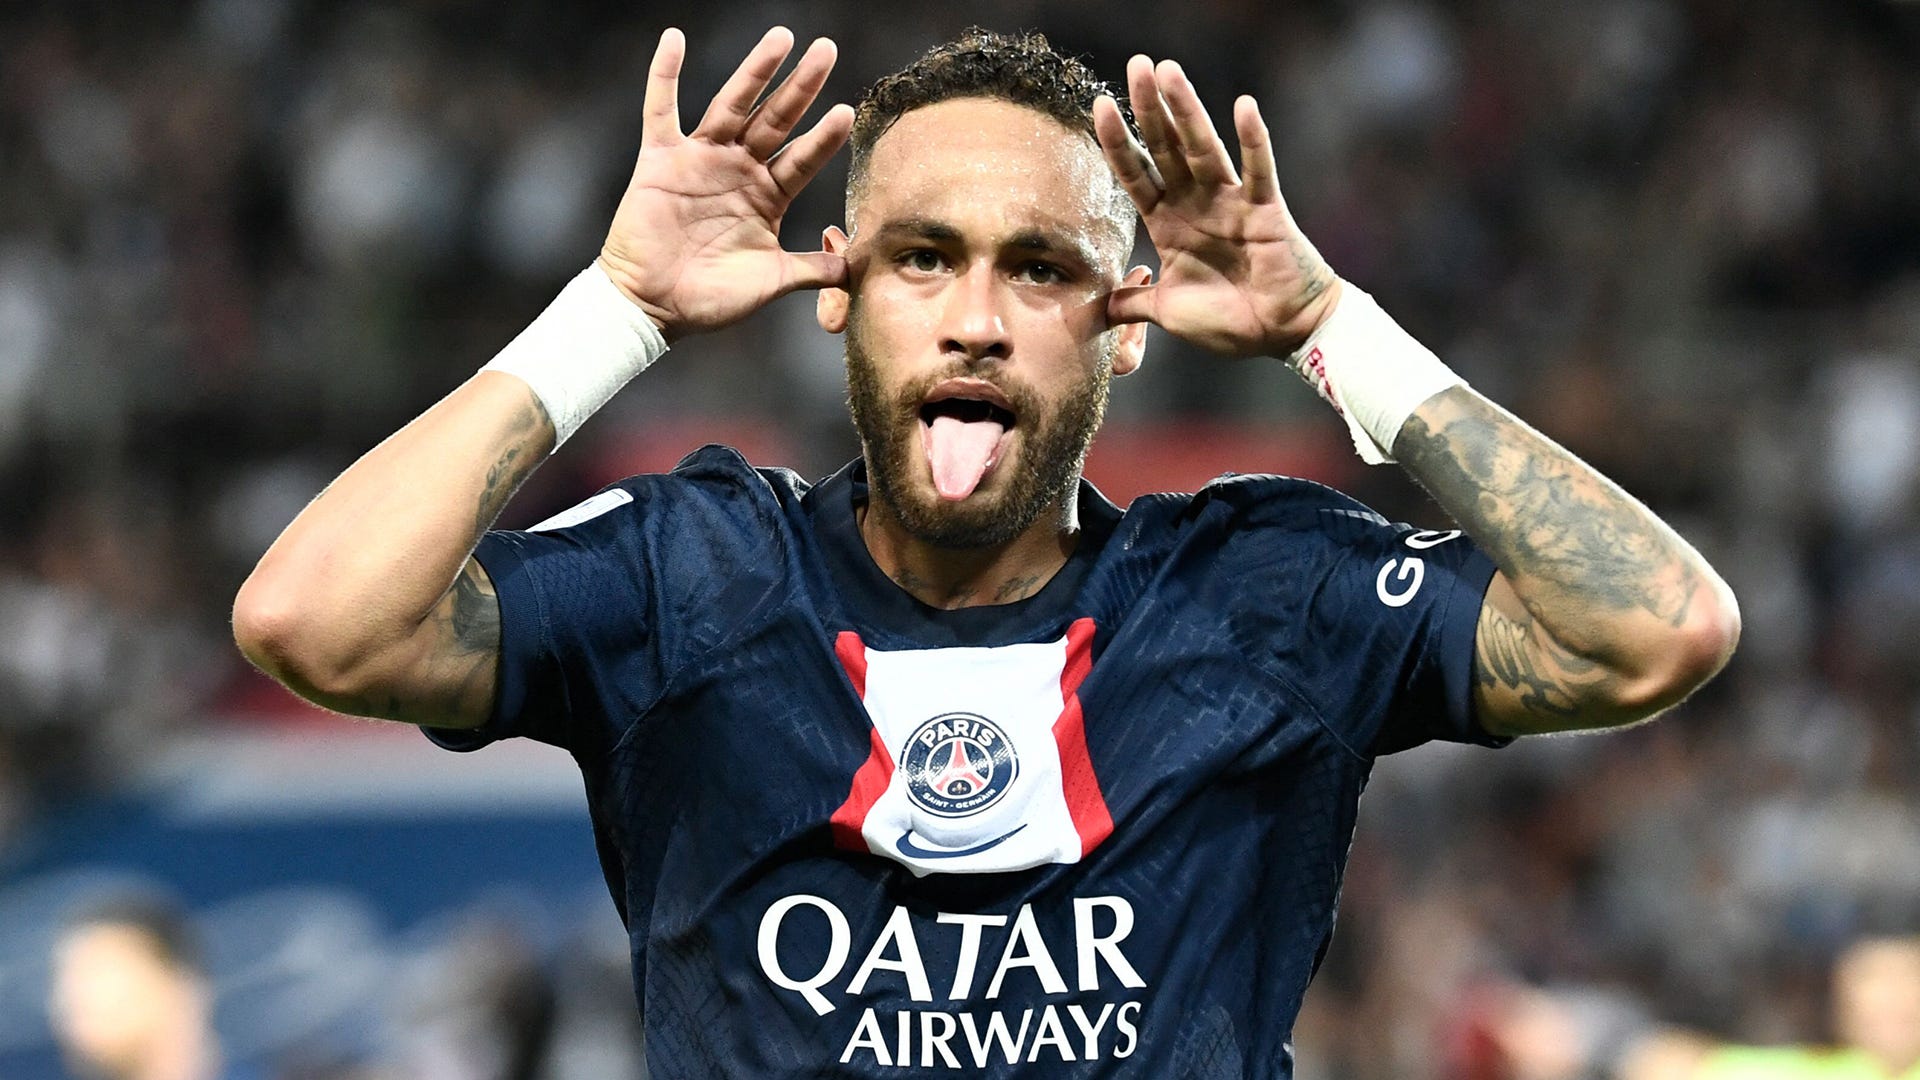 Khám phá hình ảnh của Neymar khi anh ấy khoác áo Paris Saint-Germain và cùng các đồng đội khác tạo ra những thành tích ấn tượng trên sân bóng. Hãy xem và chia sẻ ngay để chứng kiến sự nghiệp huy hoàng của cầu thủ Brazil này!